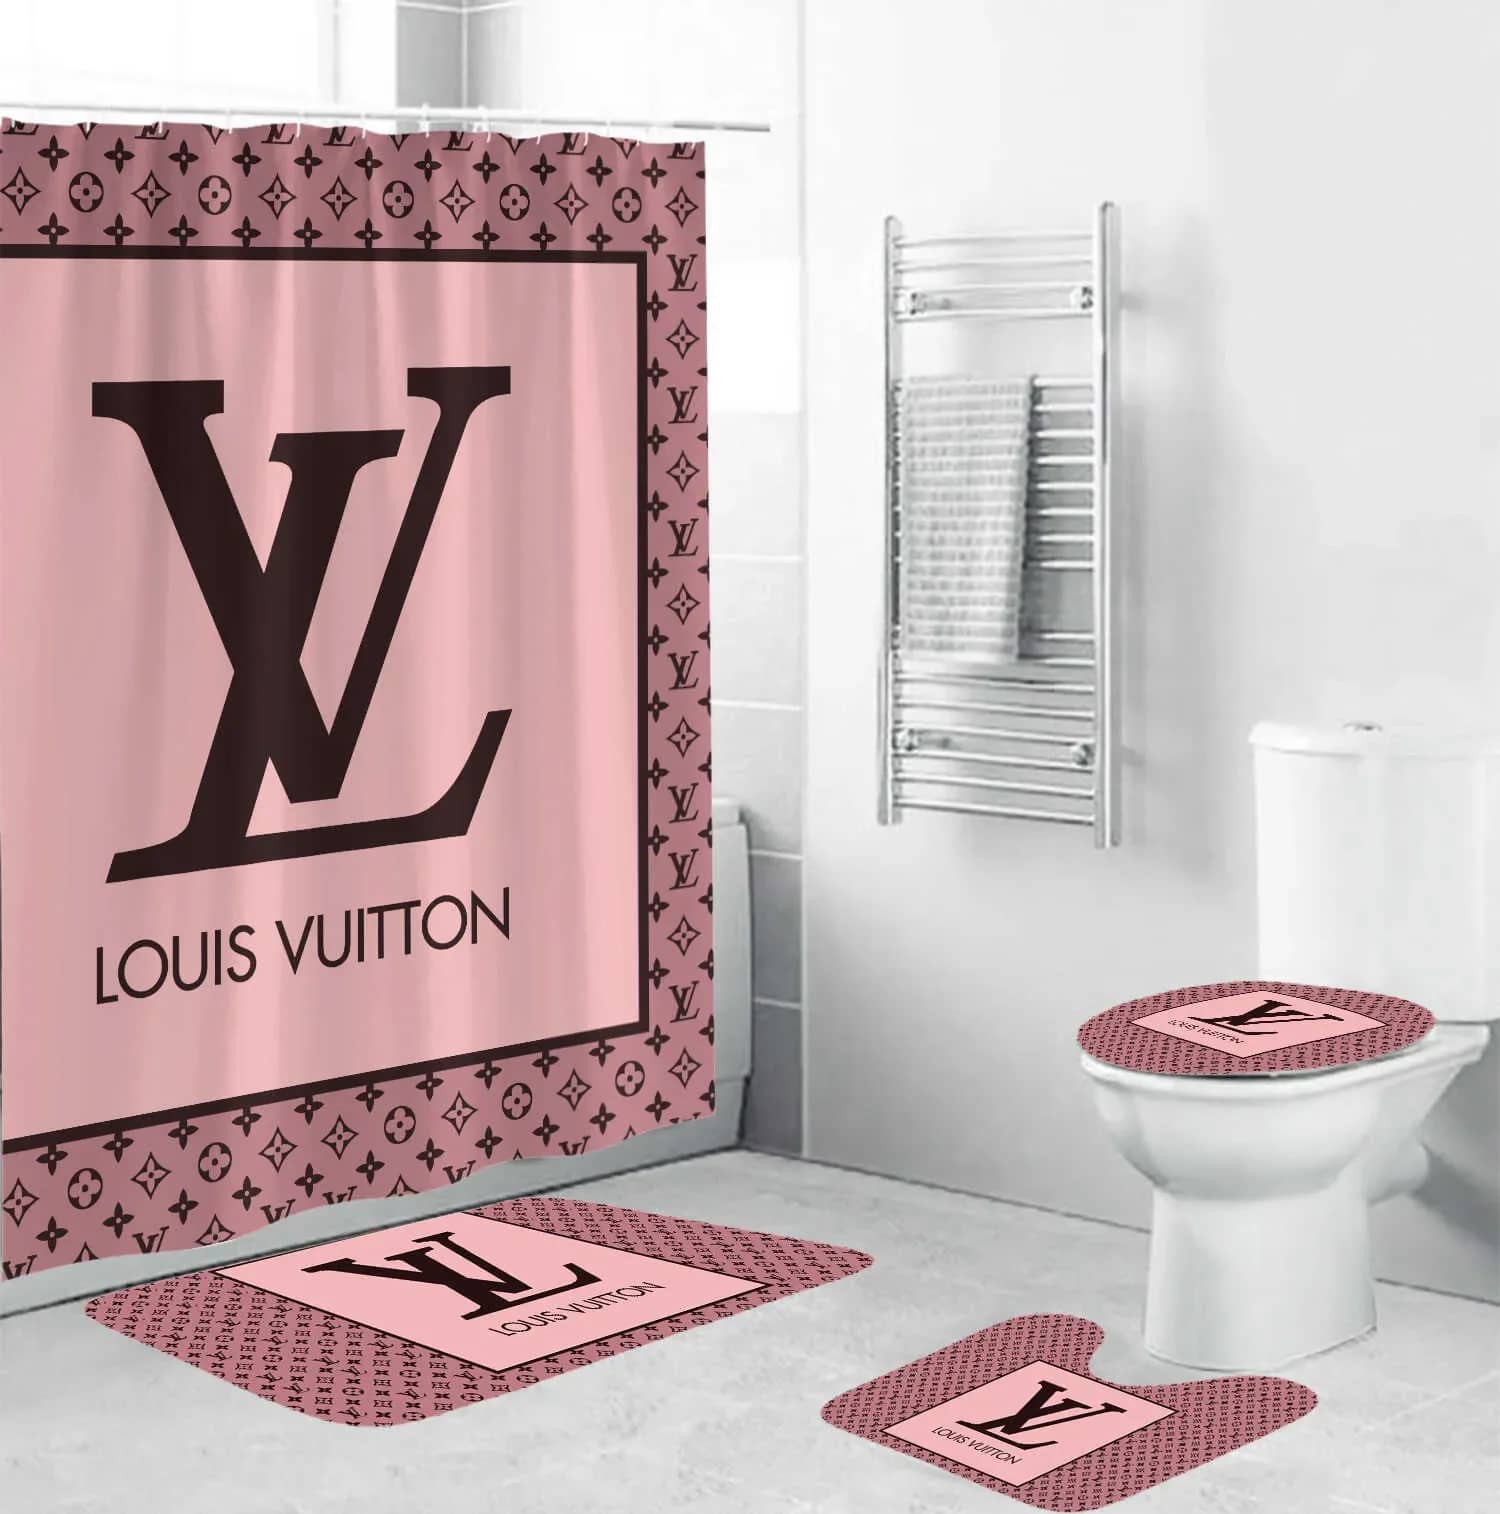 Louis Vuitton Pink Luxury Brand Premium Bathroom Sets